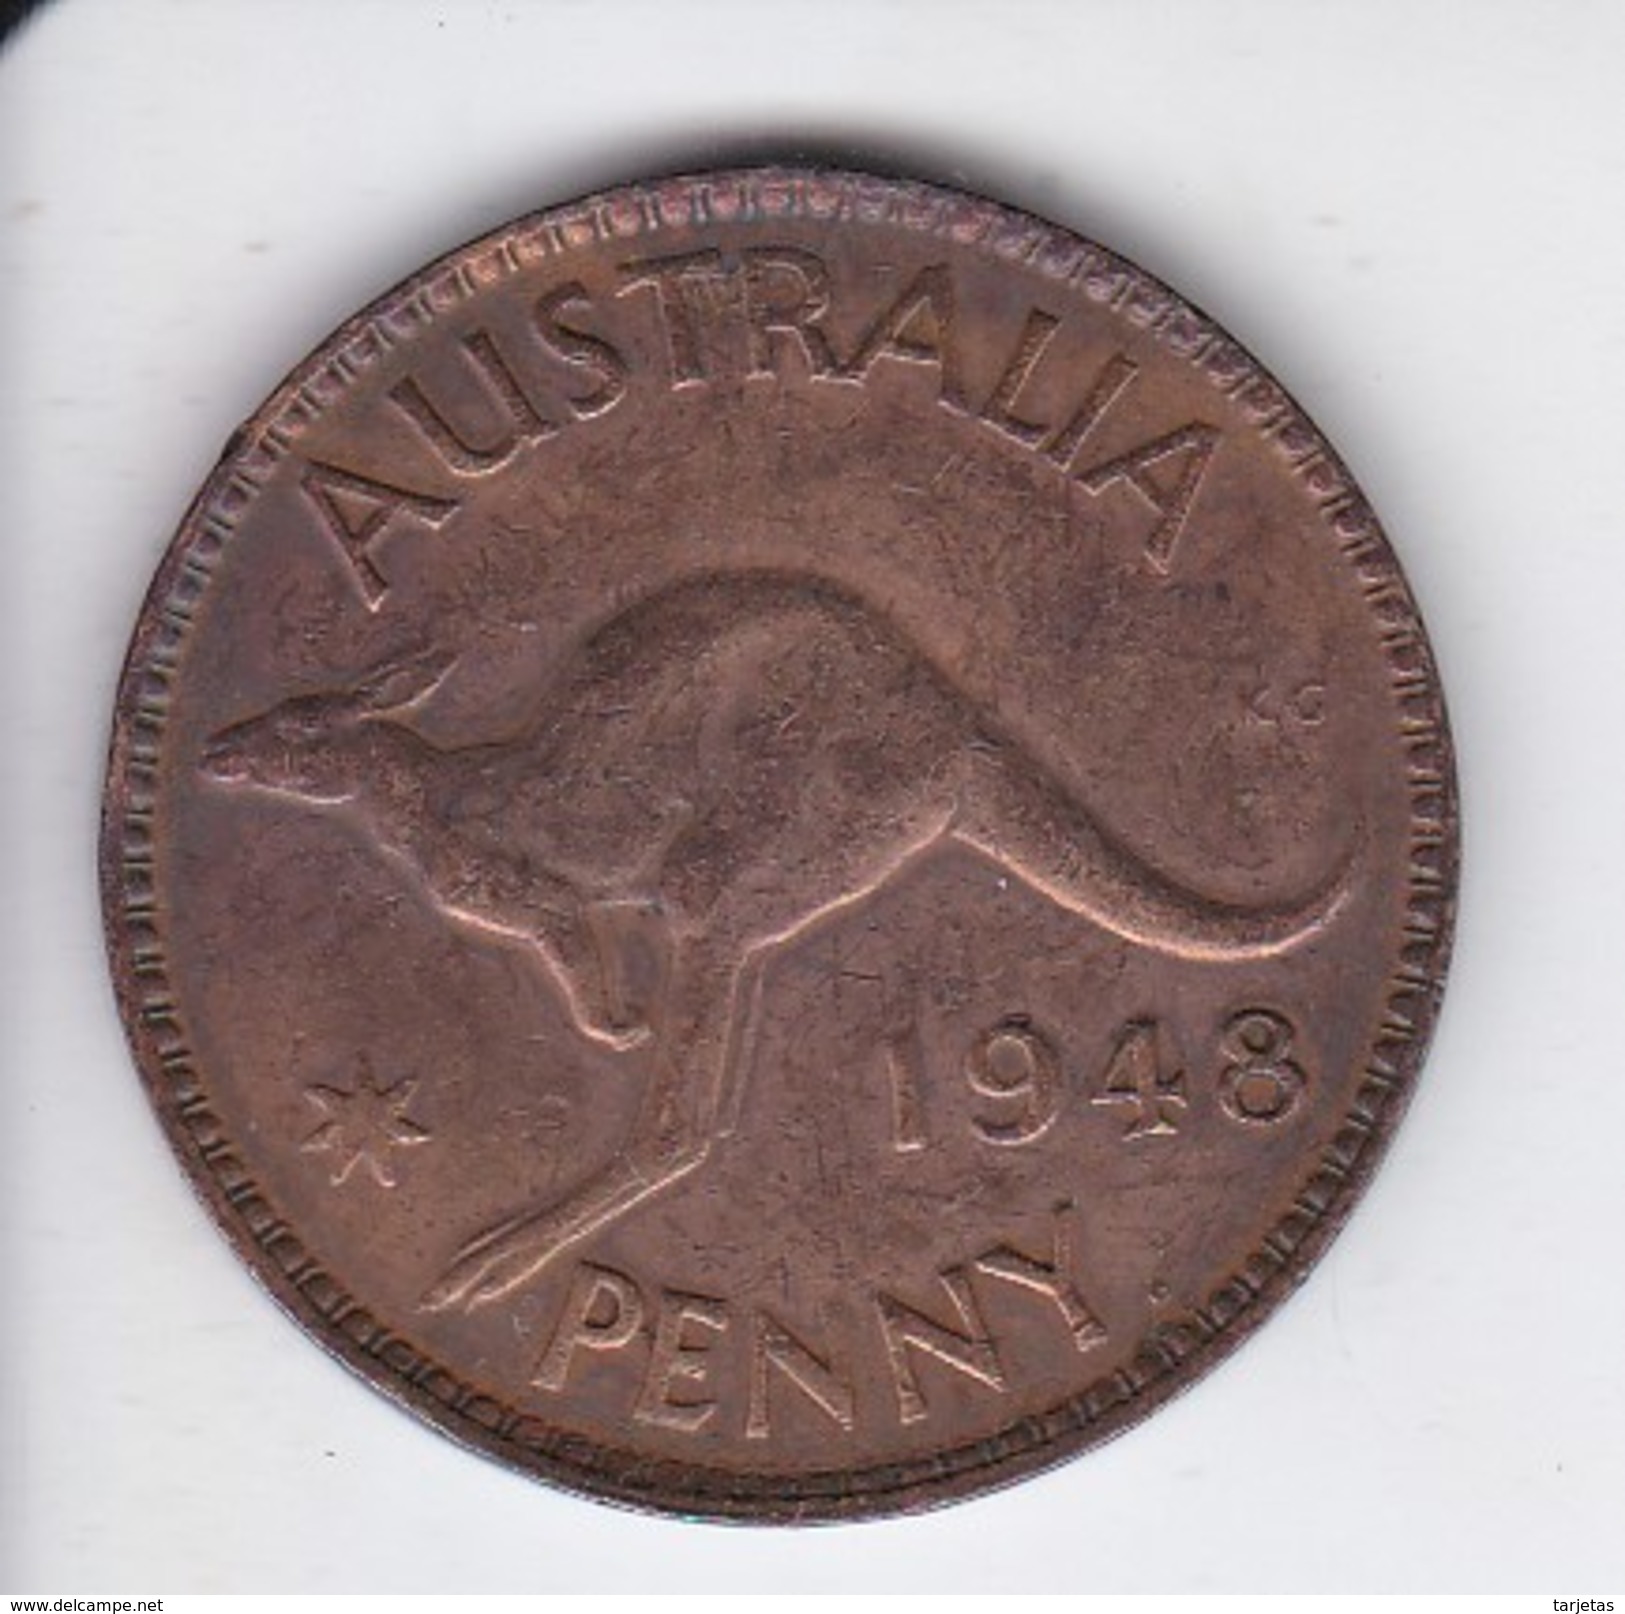 MONEDA DE AUSTRALIA DE 1 PENNY DEL AÑO 1948 CANGURO (KANGAROO) - Penny